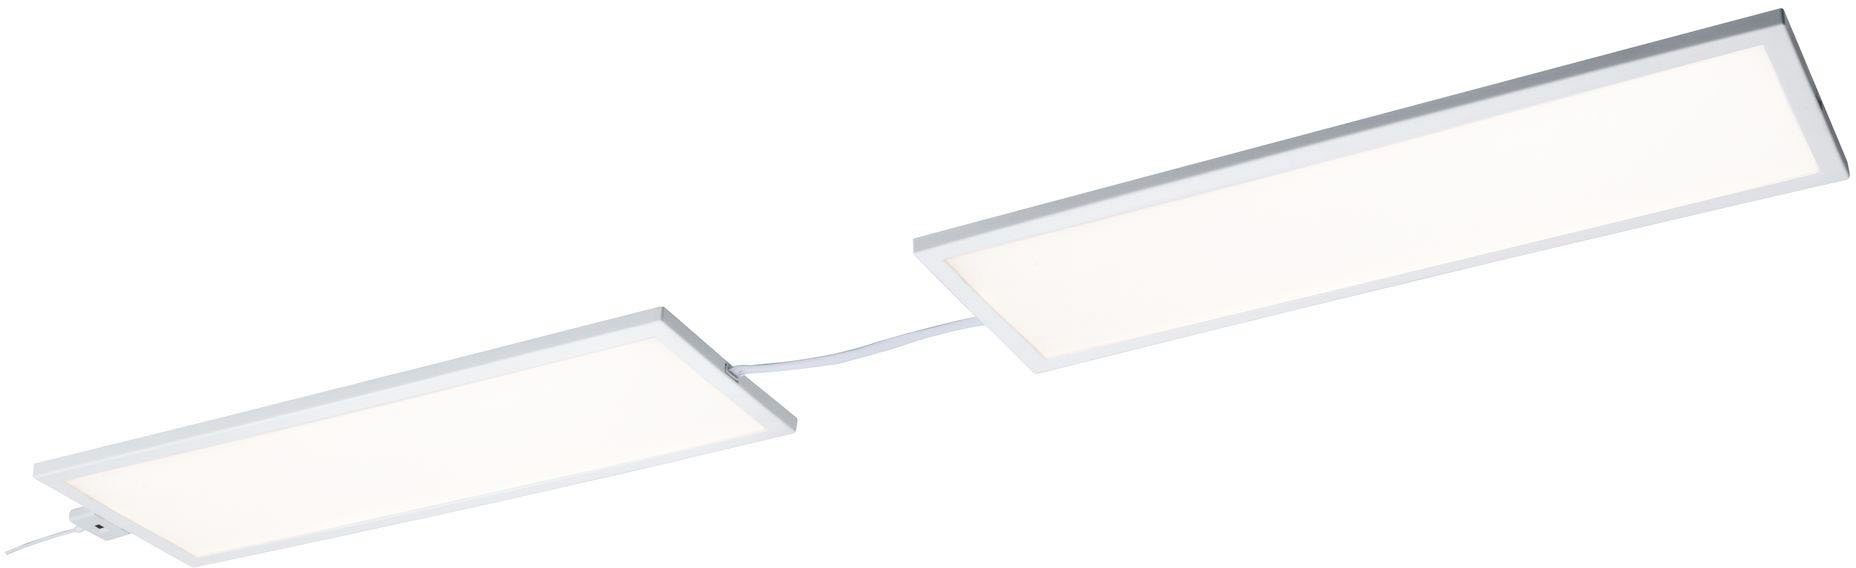 Weiß LED Ace Paulmann Warmweiß, 10x30cm LED Erweiterung 7,5W Panel fest LED 10x30cm Panel 7,5W Erweiterung, Unterschrankleuchte Ace Weiß integriert,